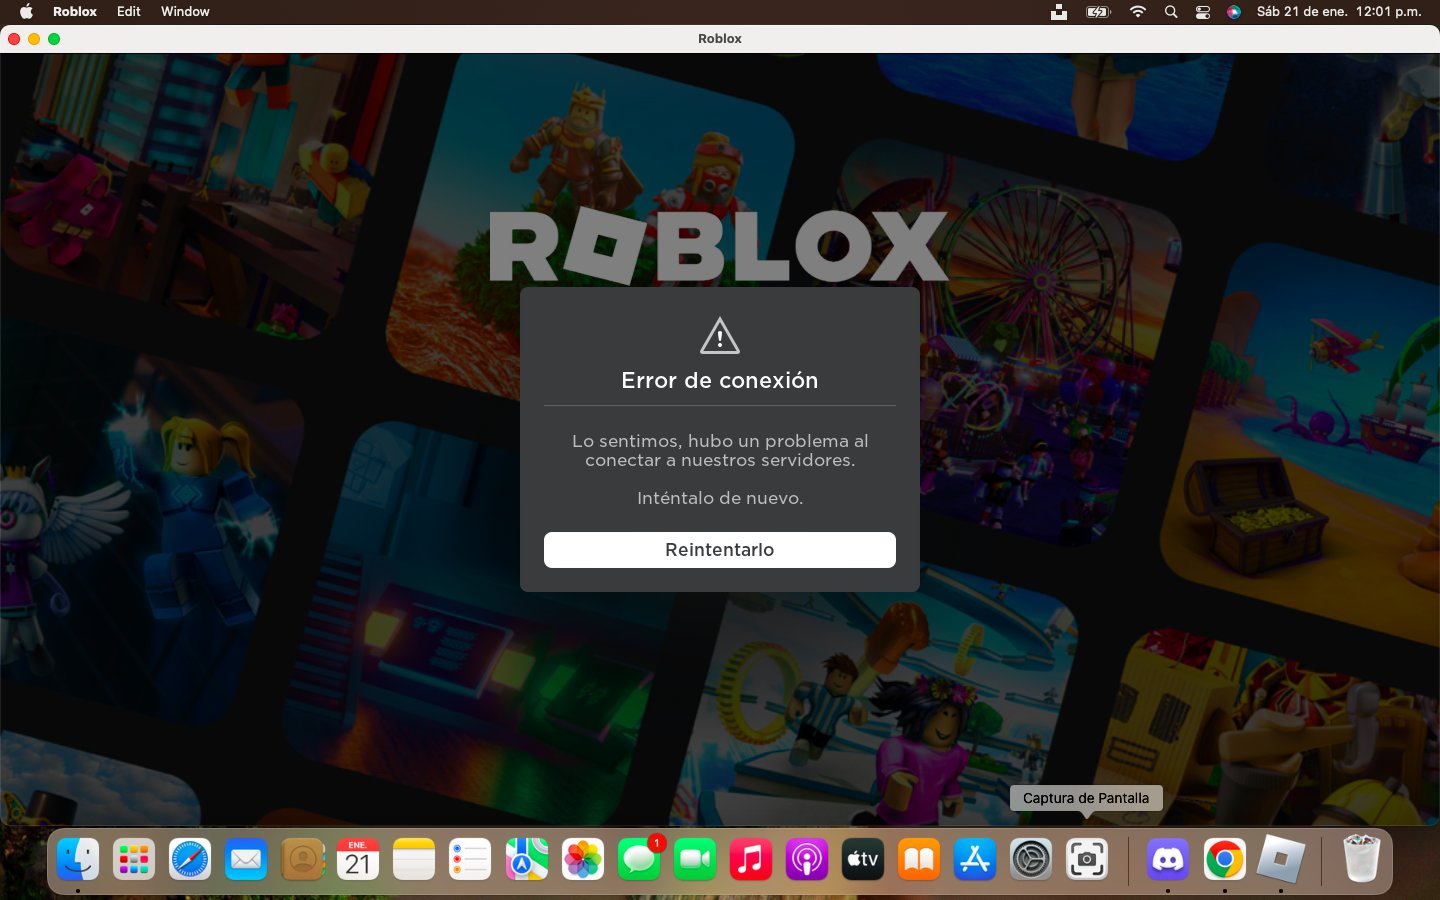 Notiblox - Últimas Noticias de Roblox - Dato-Noticia:Recientemente roblox  ha removido la opción (inicio de sesión rapido) no sabemos el motivo pero  te mantendremos informado.